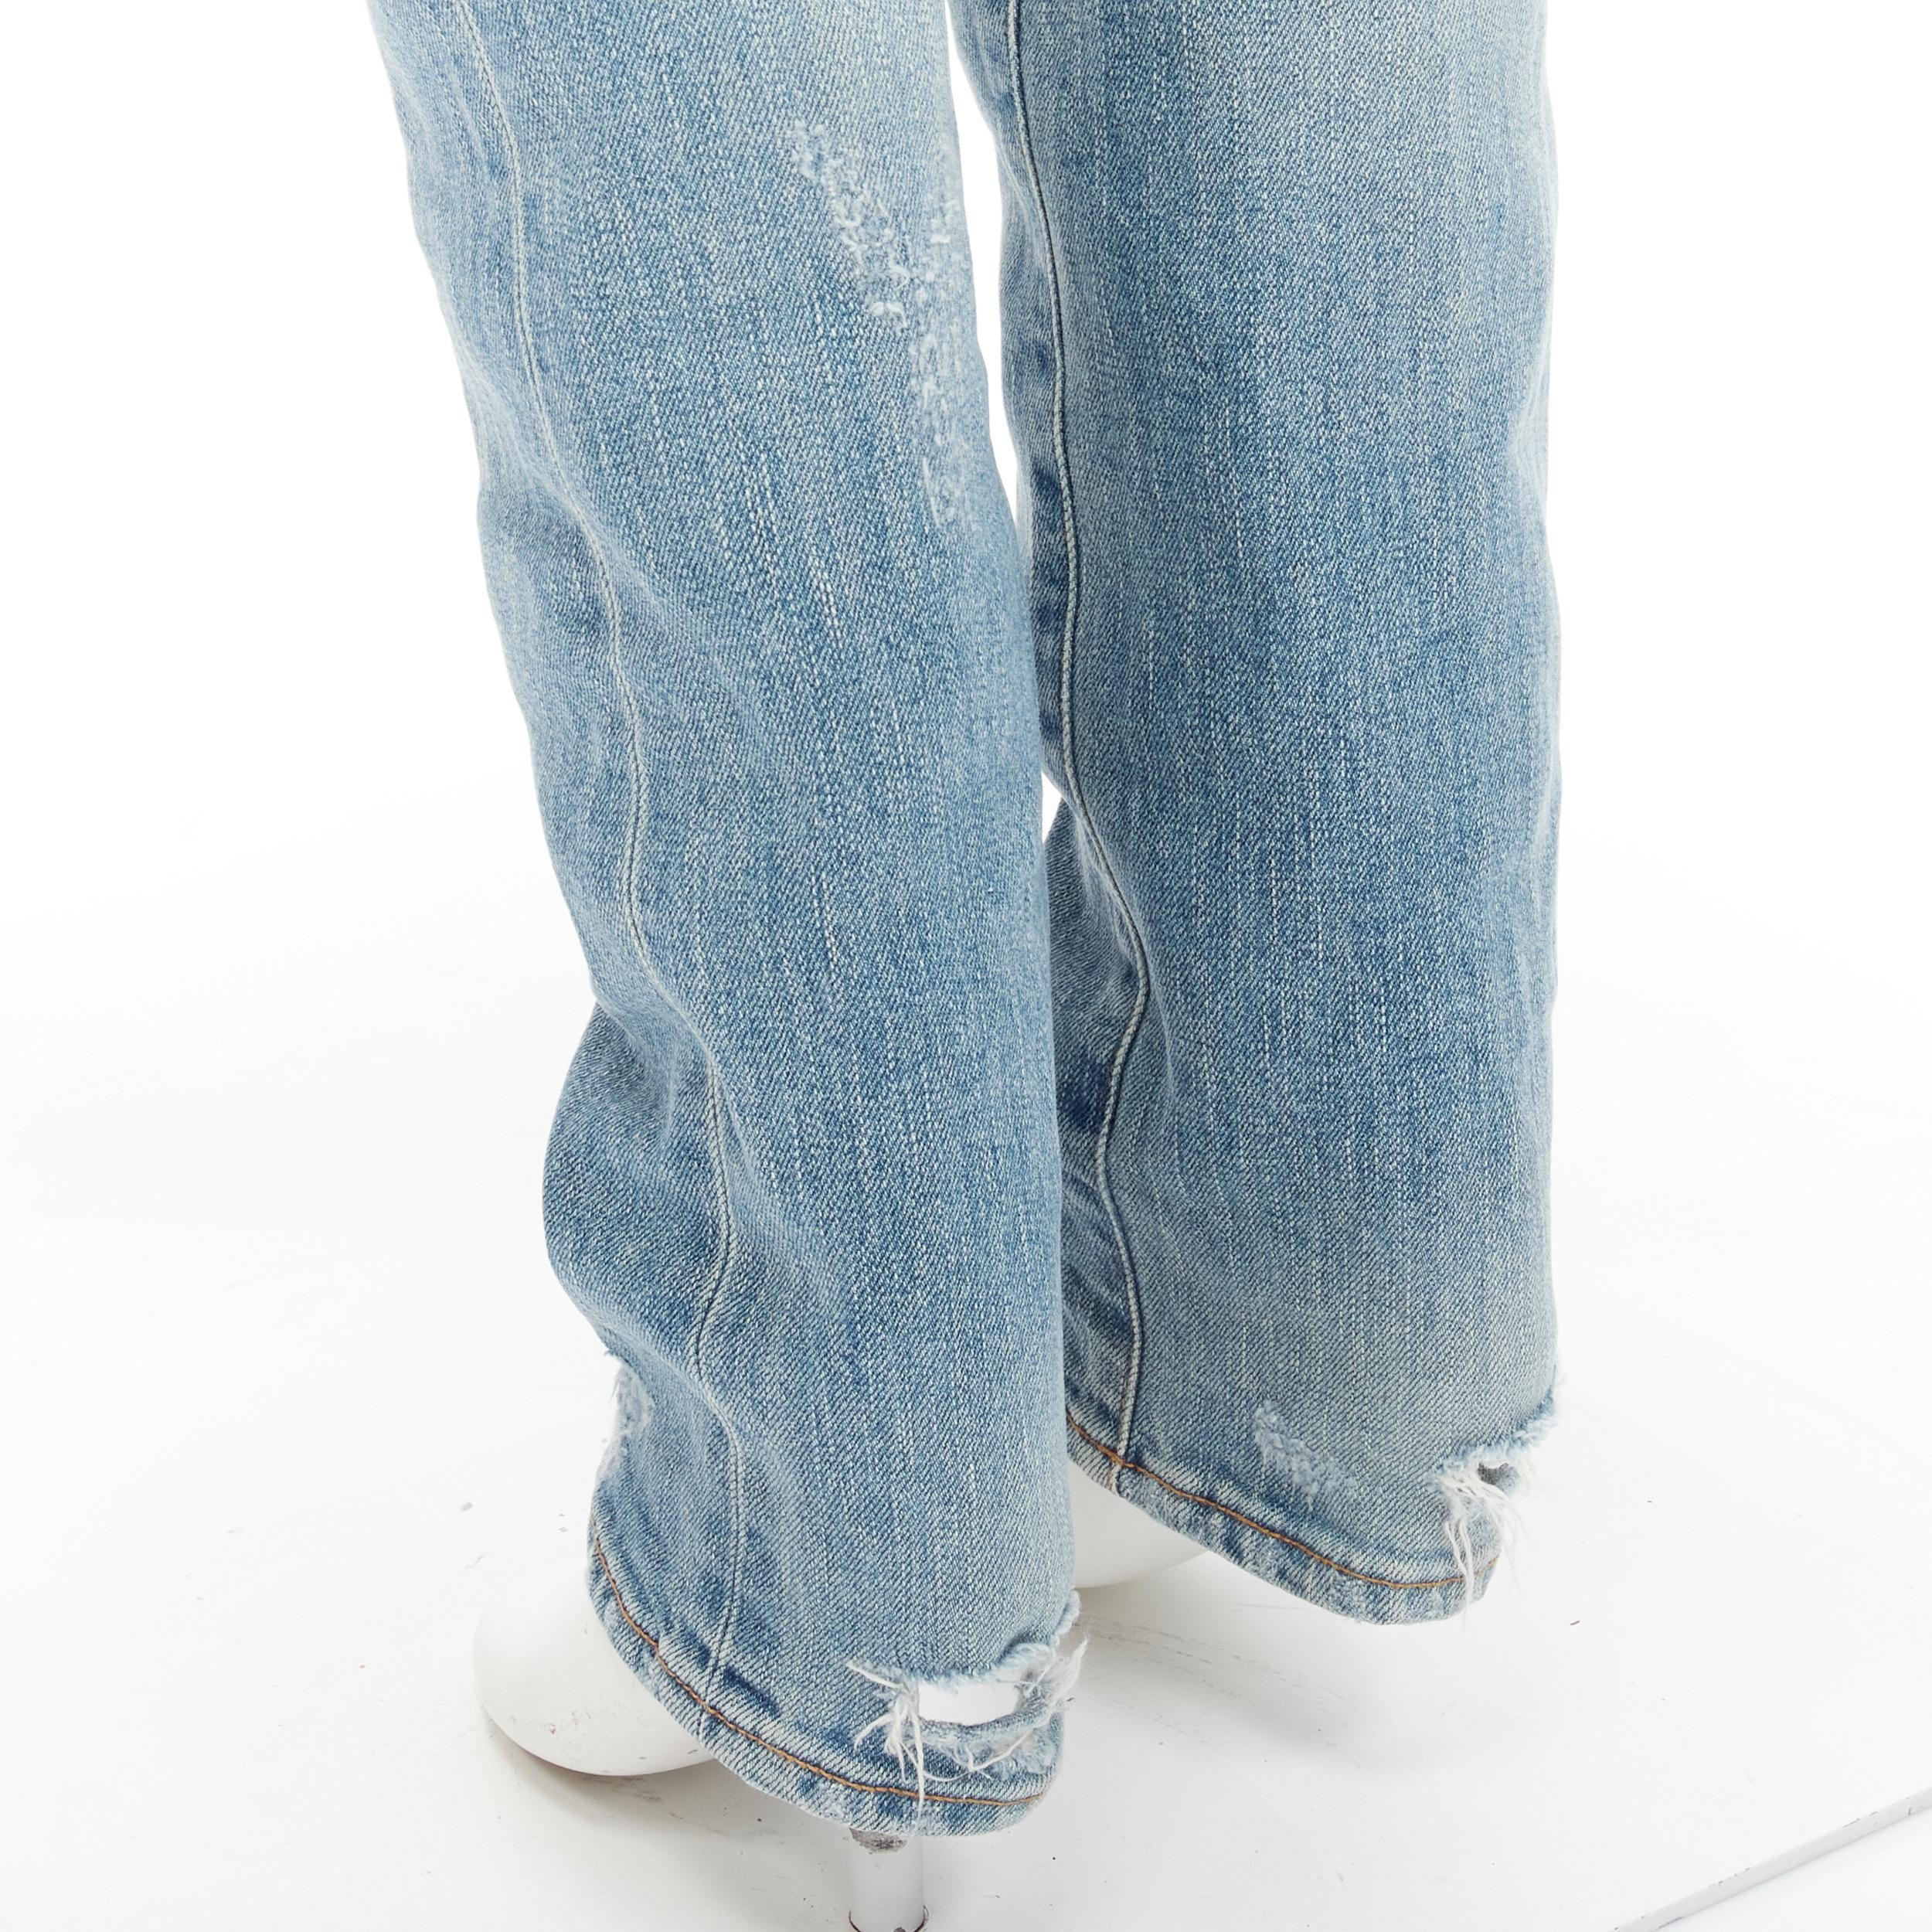 SAINT LAURENT Hedi Slimane Crash D02 M/SK-LW destroyed distressed blue jeans 30